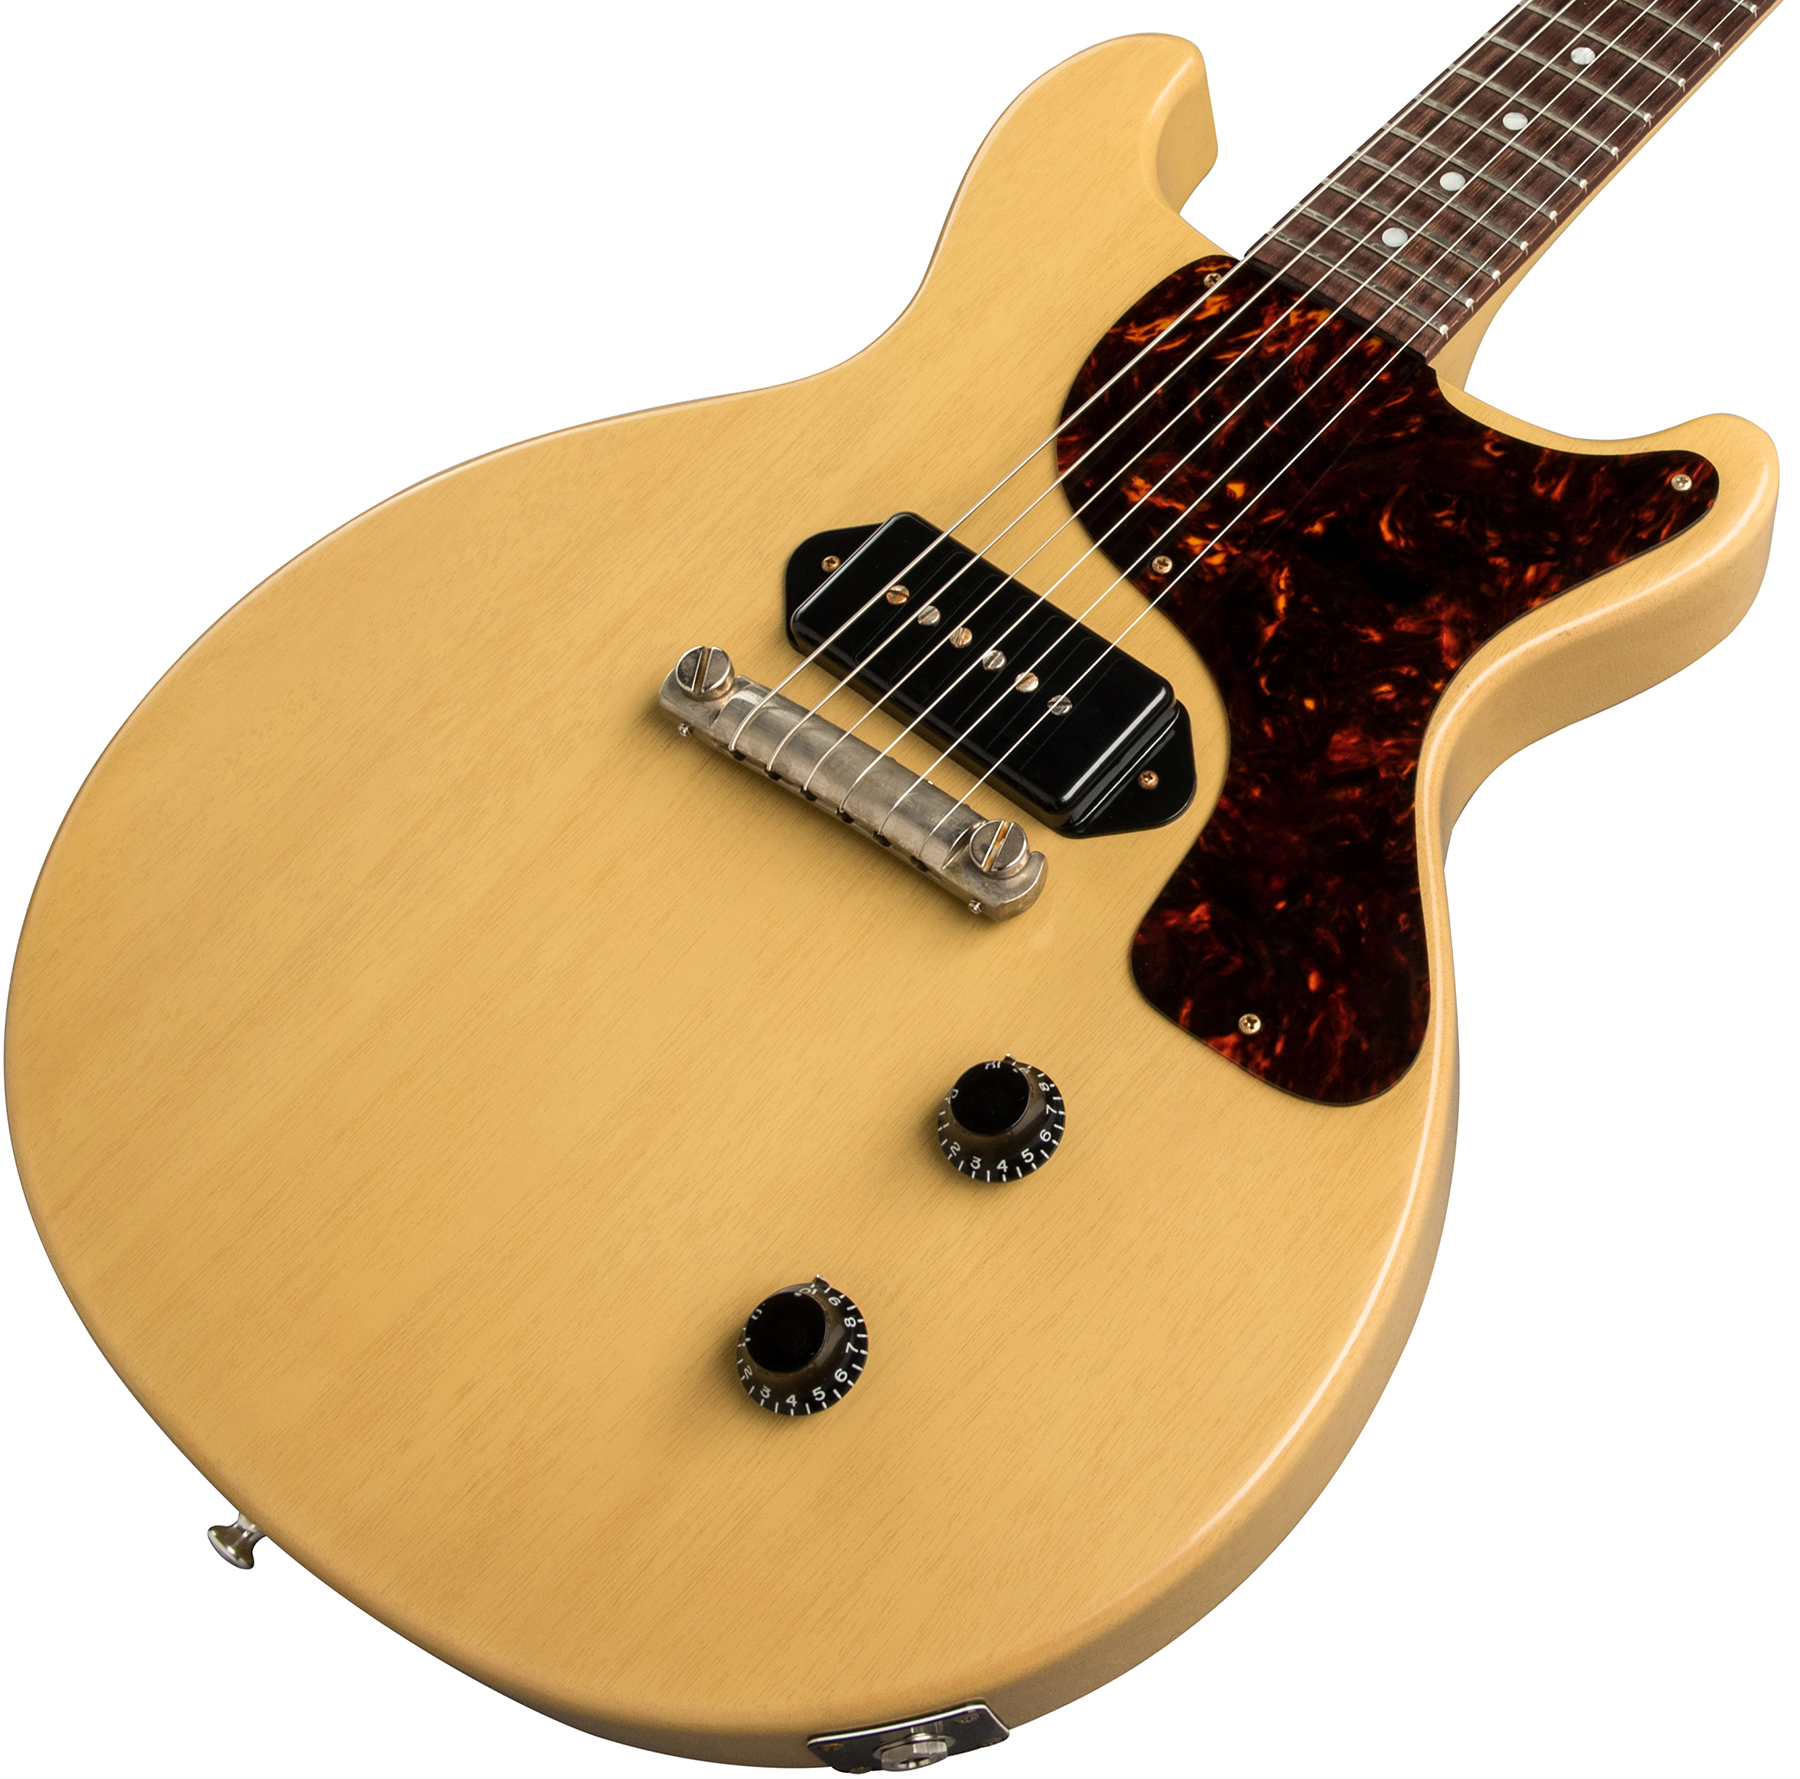 Gibson Custom Shop Les Paul Junior 1958 Double Cut Reissue P90 Ht Rw - Vos Tv Yellow - Guitarra eléctrica de corte único. - Variation 3